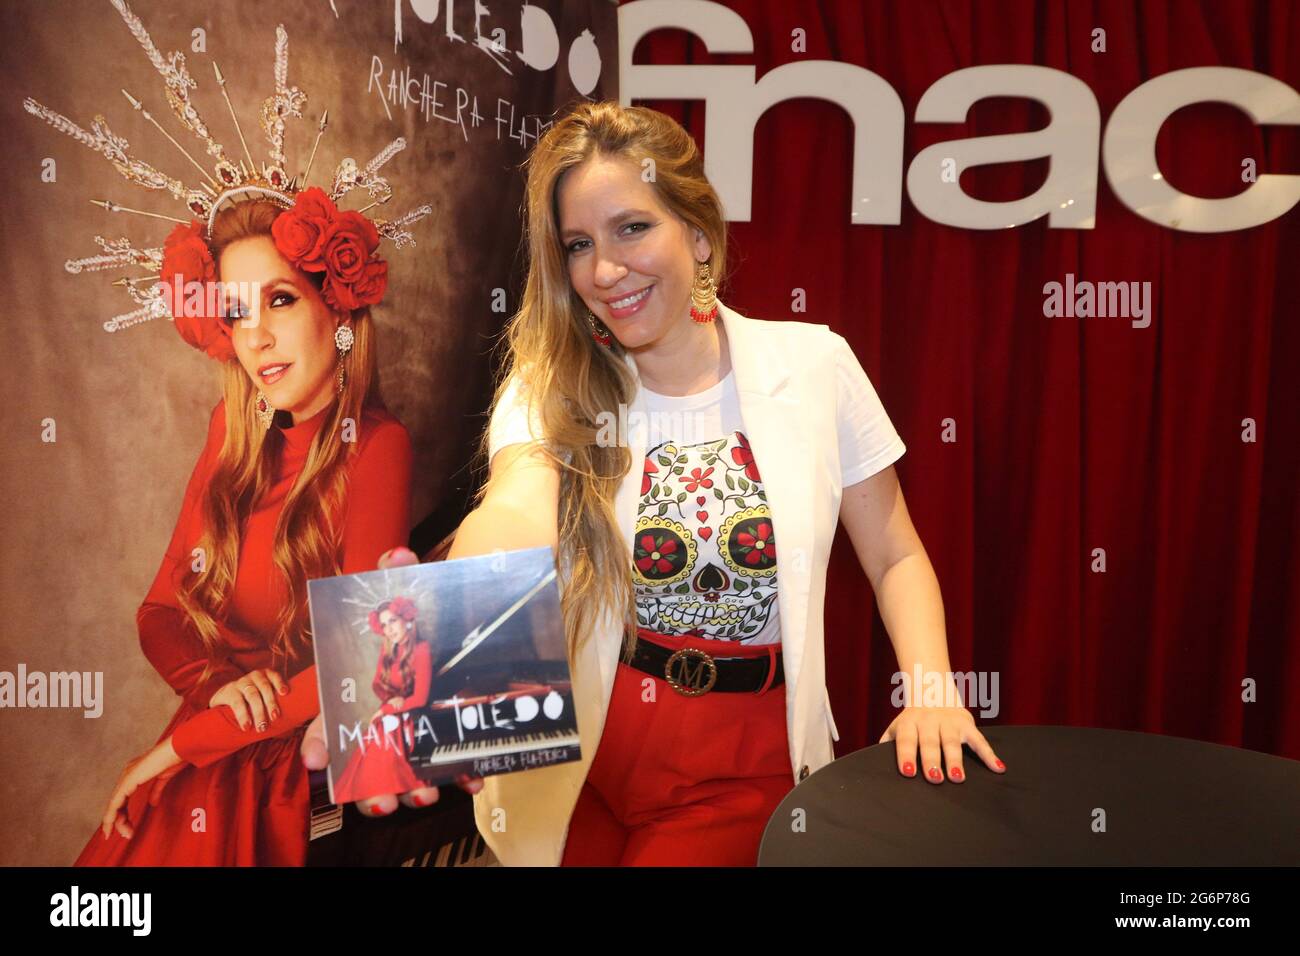 7 juillet 2021 : 7 juillet 2021 (Malaga) Marí-a Toledo sort un nouvel album  faisant un clin d'œil au Mexique l'artiste lance 'Ranchera flamenca', sa  sixième œuvre dans laquelle elle fusionne les